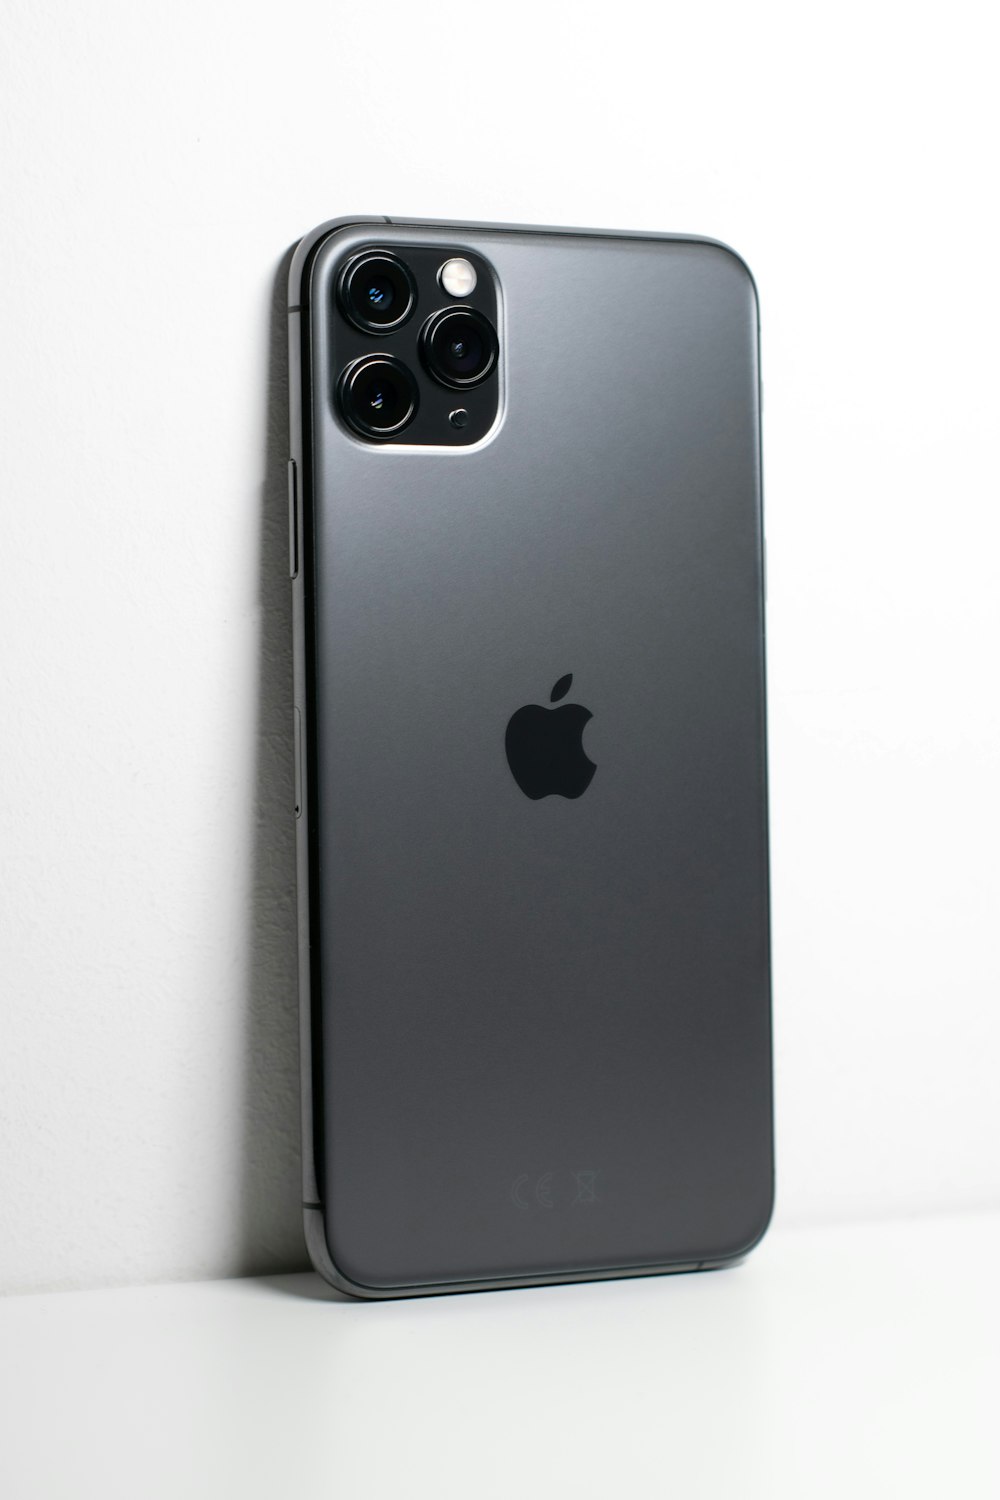 iphone 7 plus noir sur une surface blanche